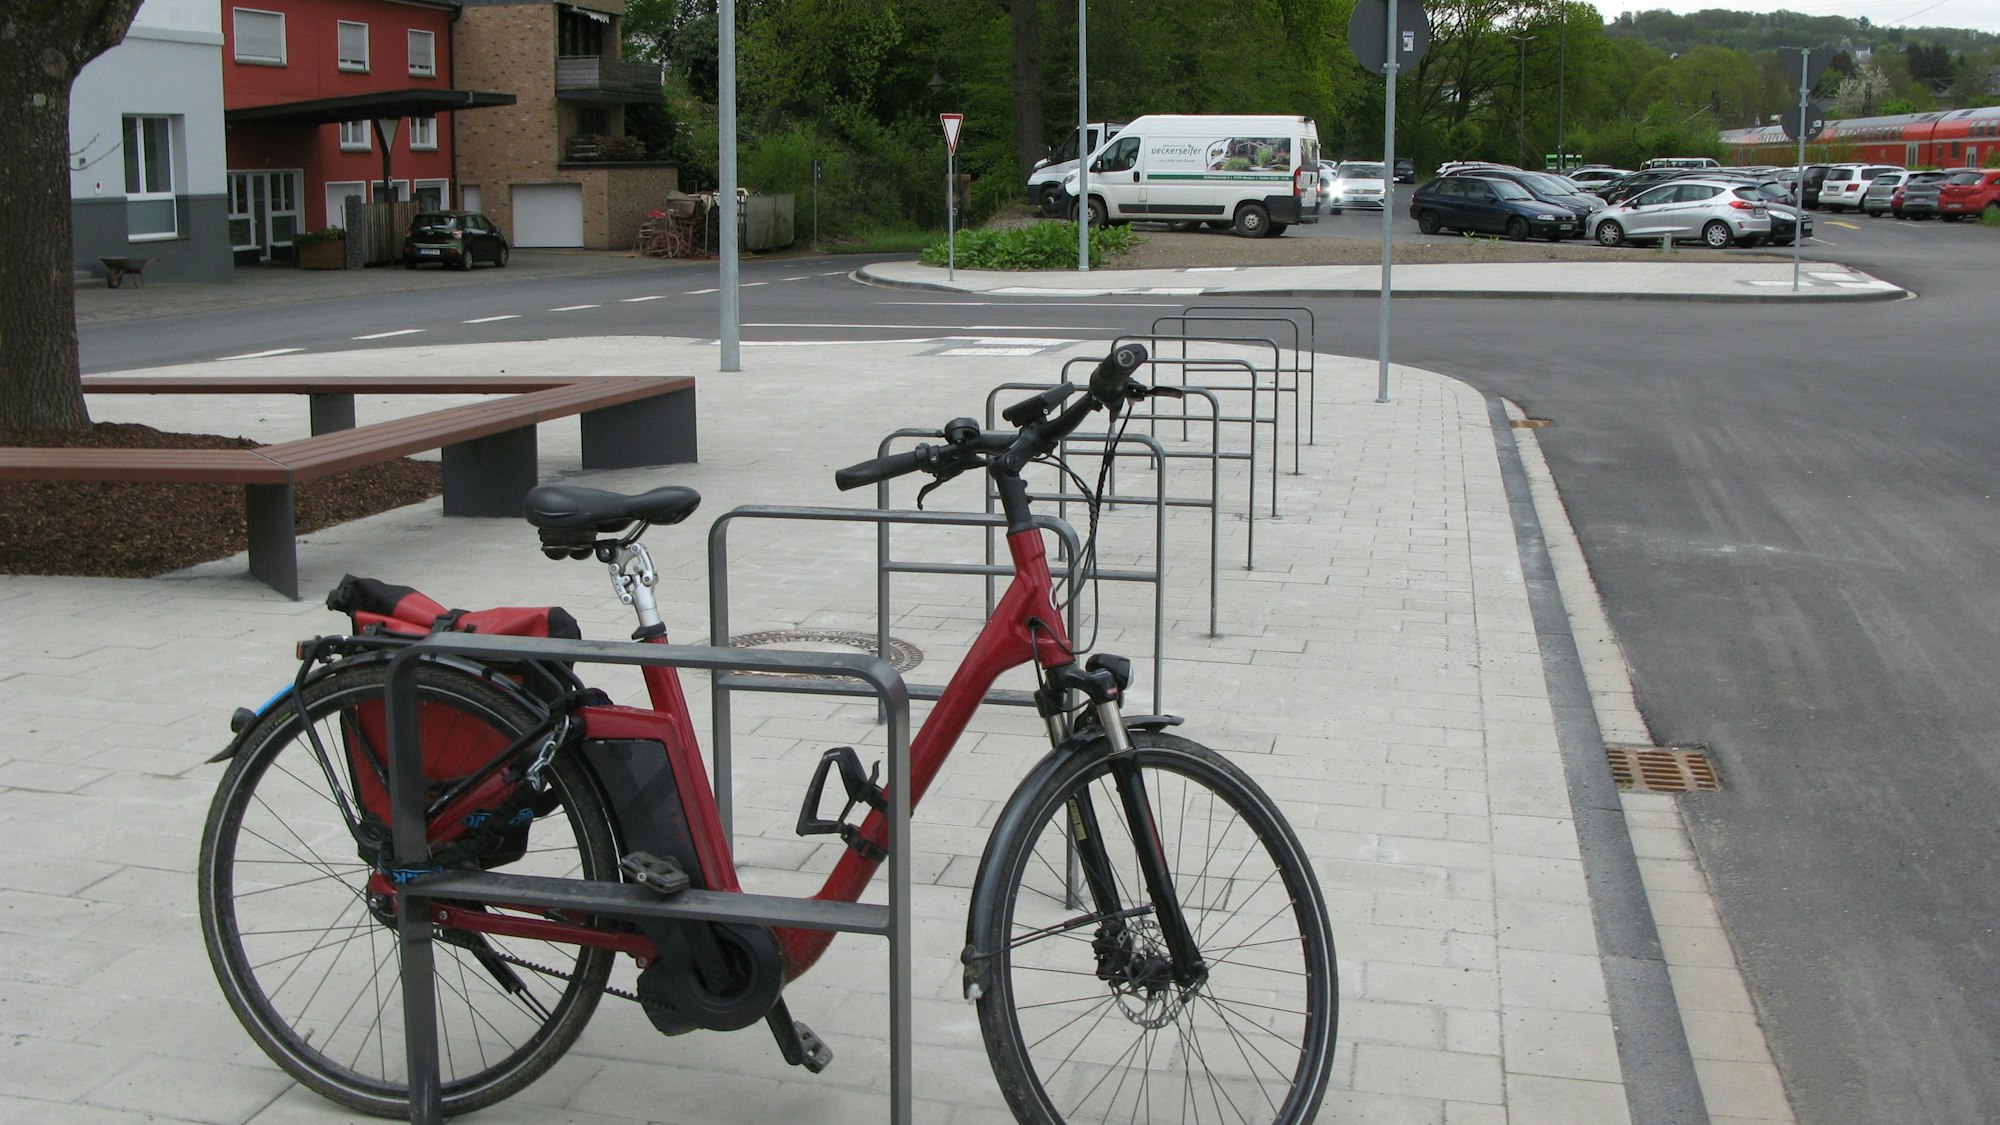 Ein rotes Fahrrad ist einem Anlehnbügel abgestellt, um einen Baum wurde eine Sitzbank installiert. Im Hintergrund ist der Park-and-Ride-Platz zu sehen, auf dem ein Parkhaus gebaut werden soll.